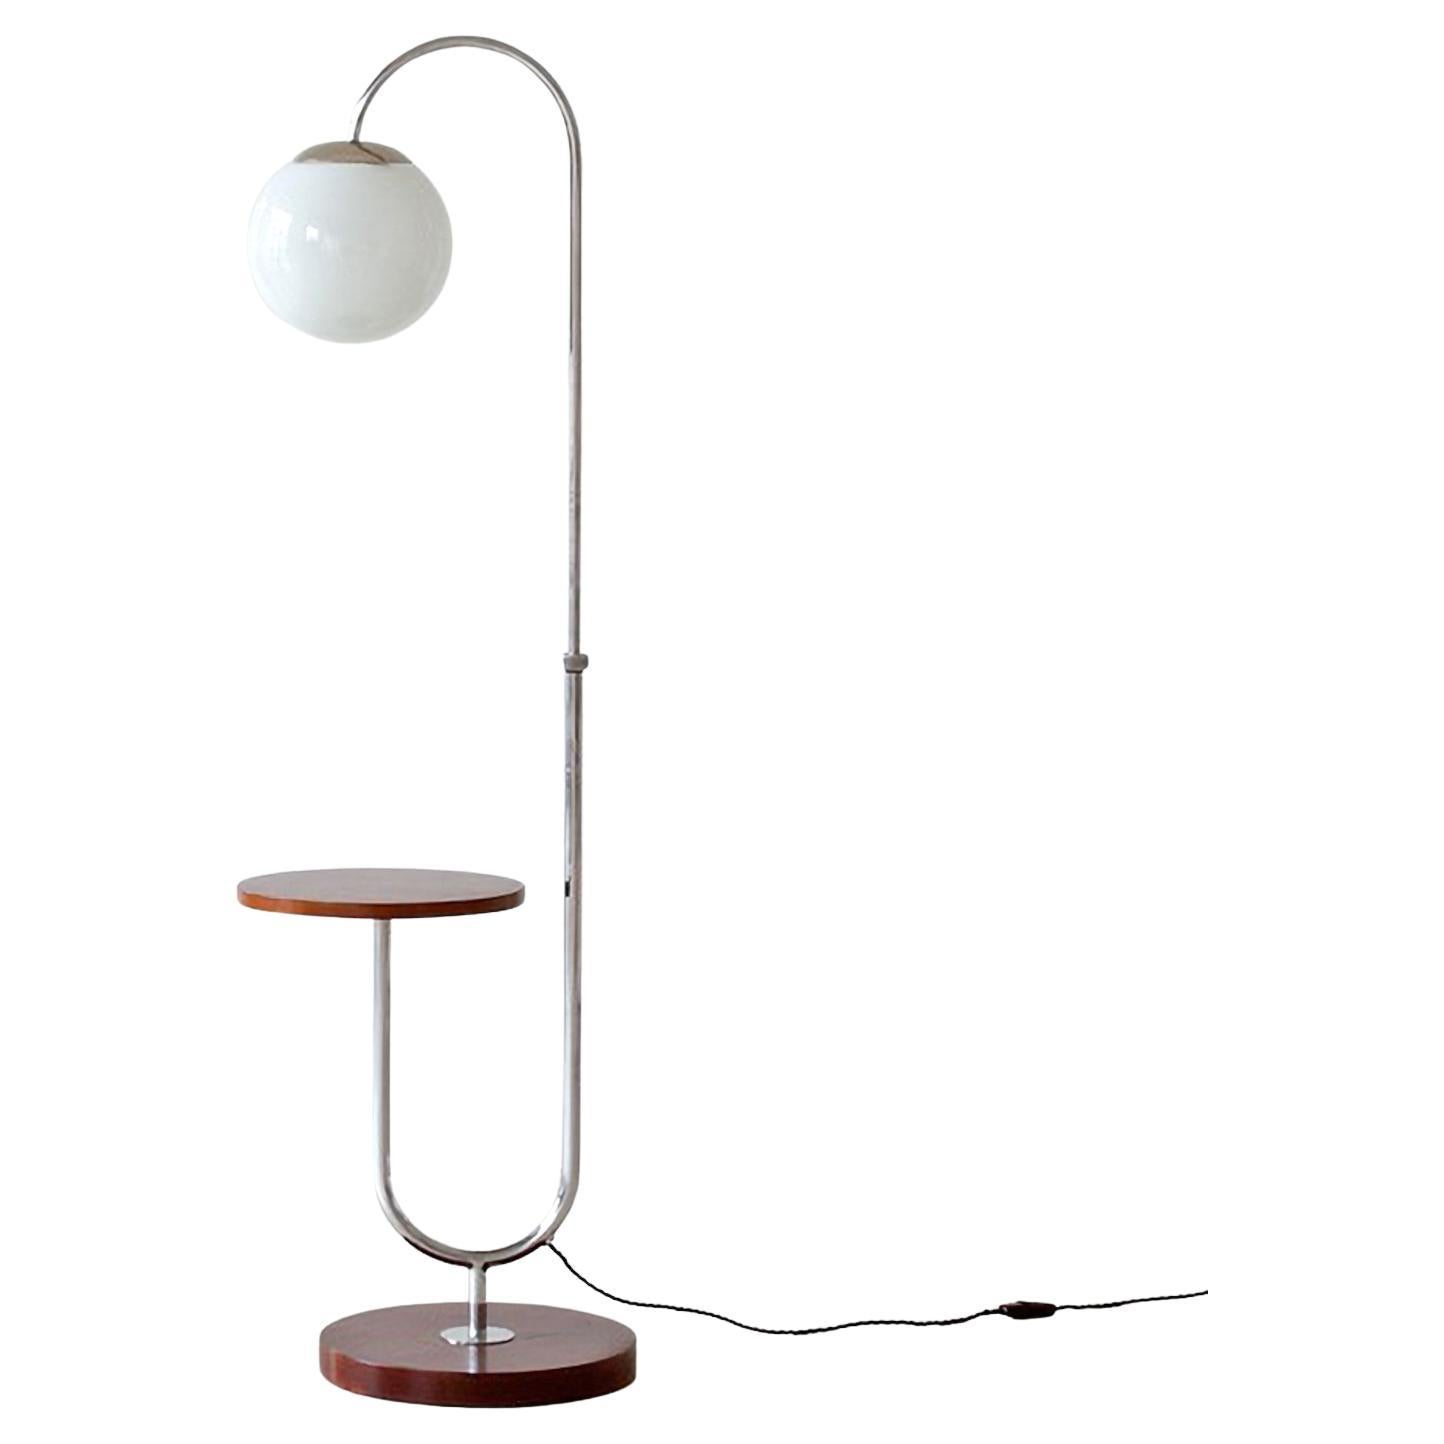 Lampadaire moderniste avec table intégrée, métal nickelé, bois teinté